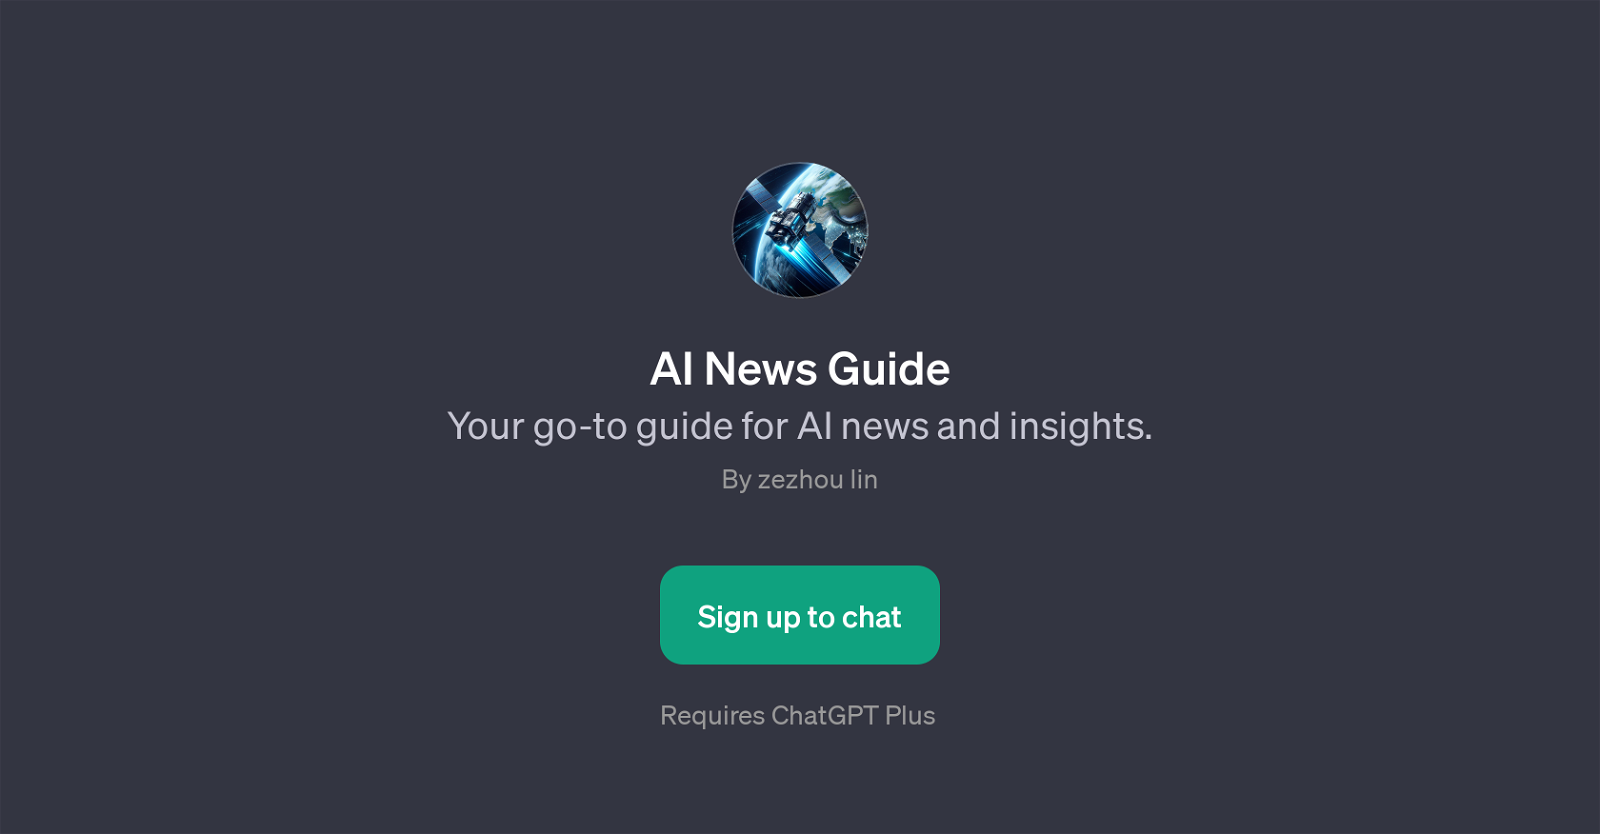 AI News Guide website